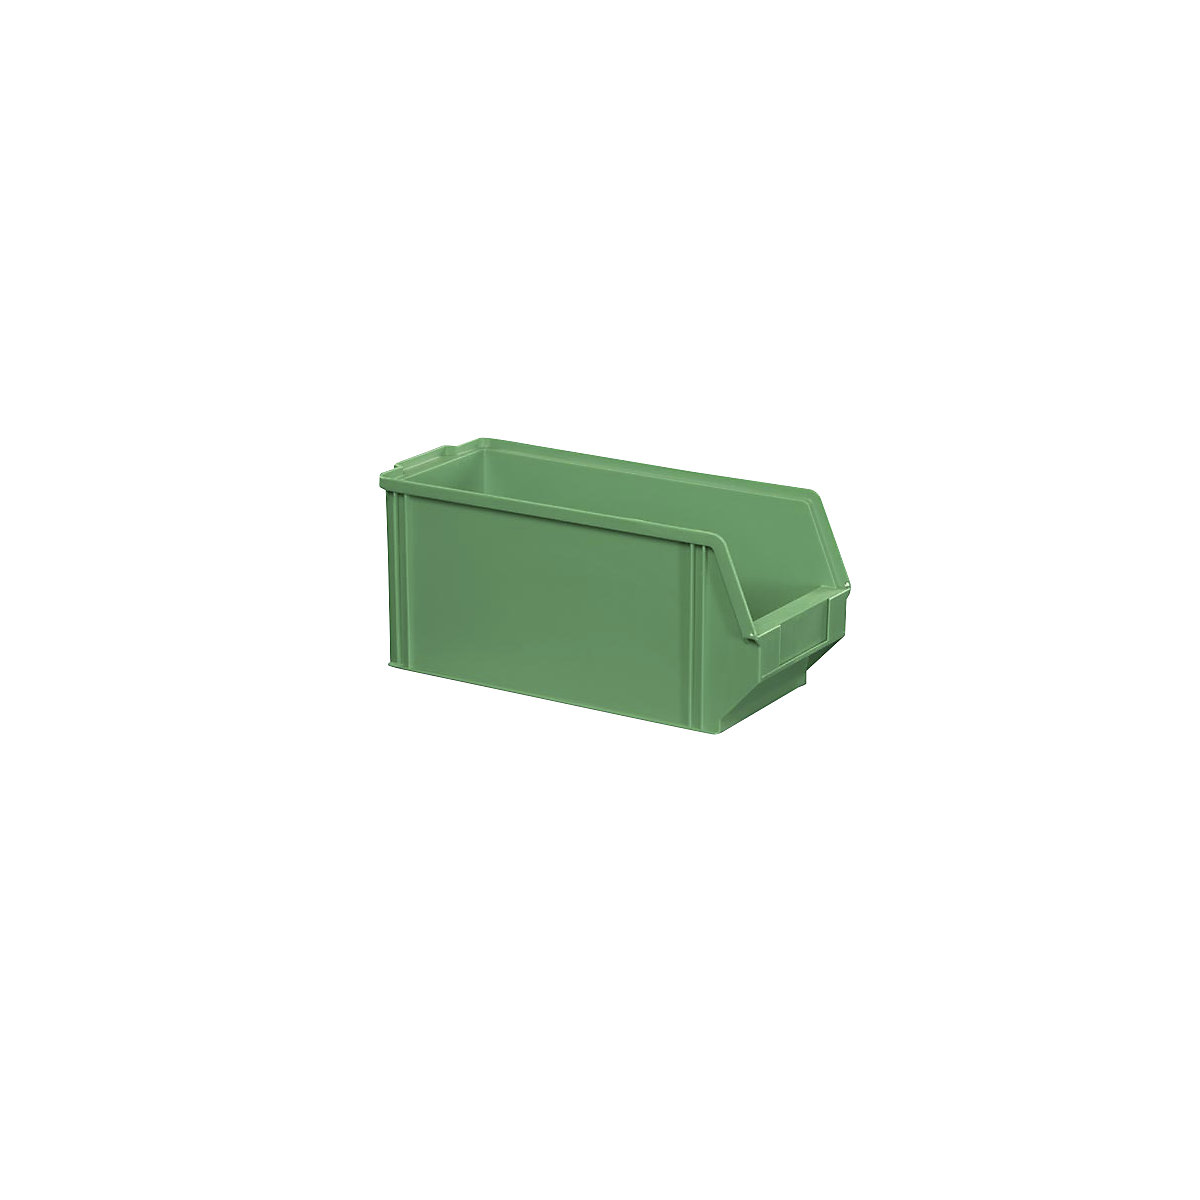 Sichtlagerkasten aus Polystyrol, Länge 350 mm, BxH 146 x 150 mm, VE 28 Stk, grün-5